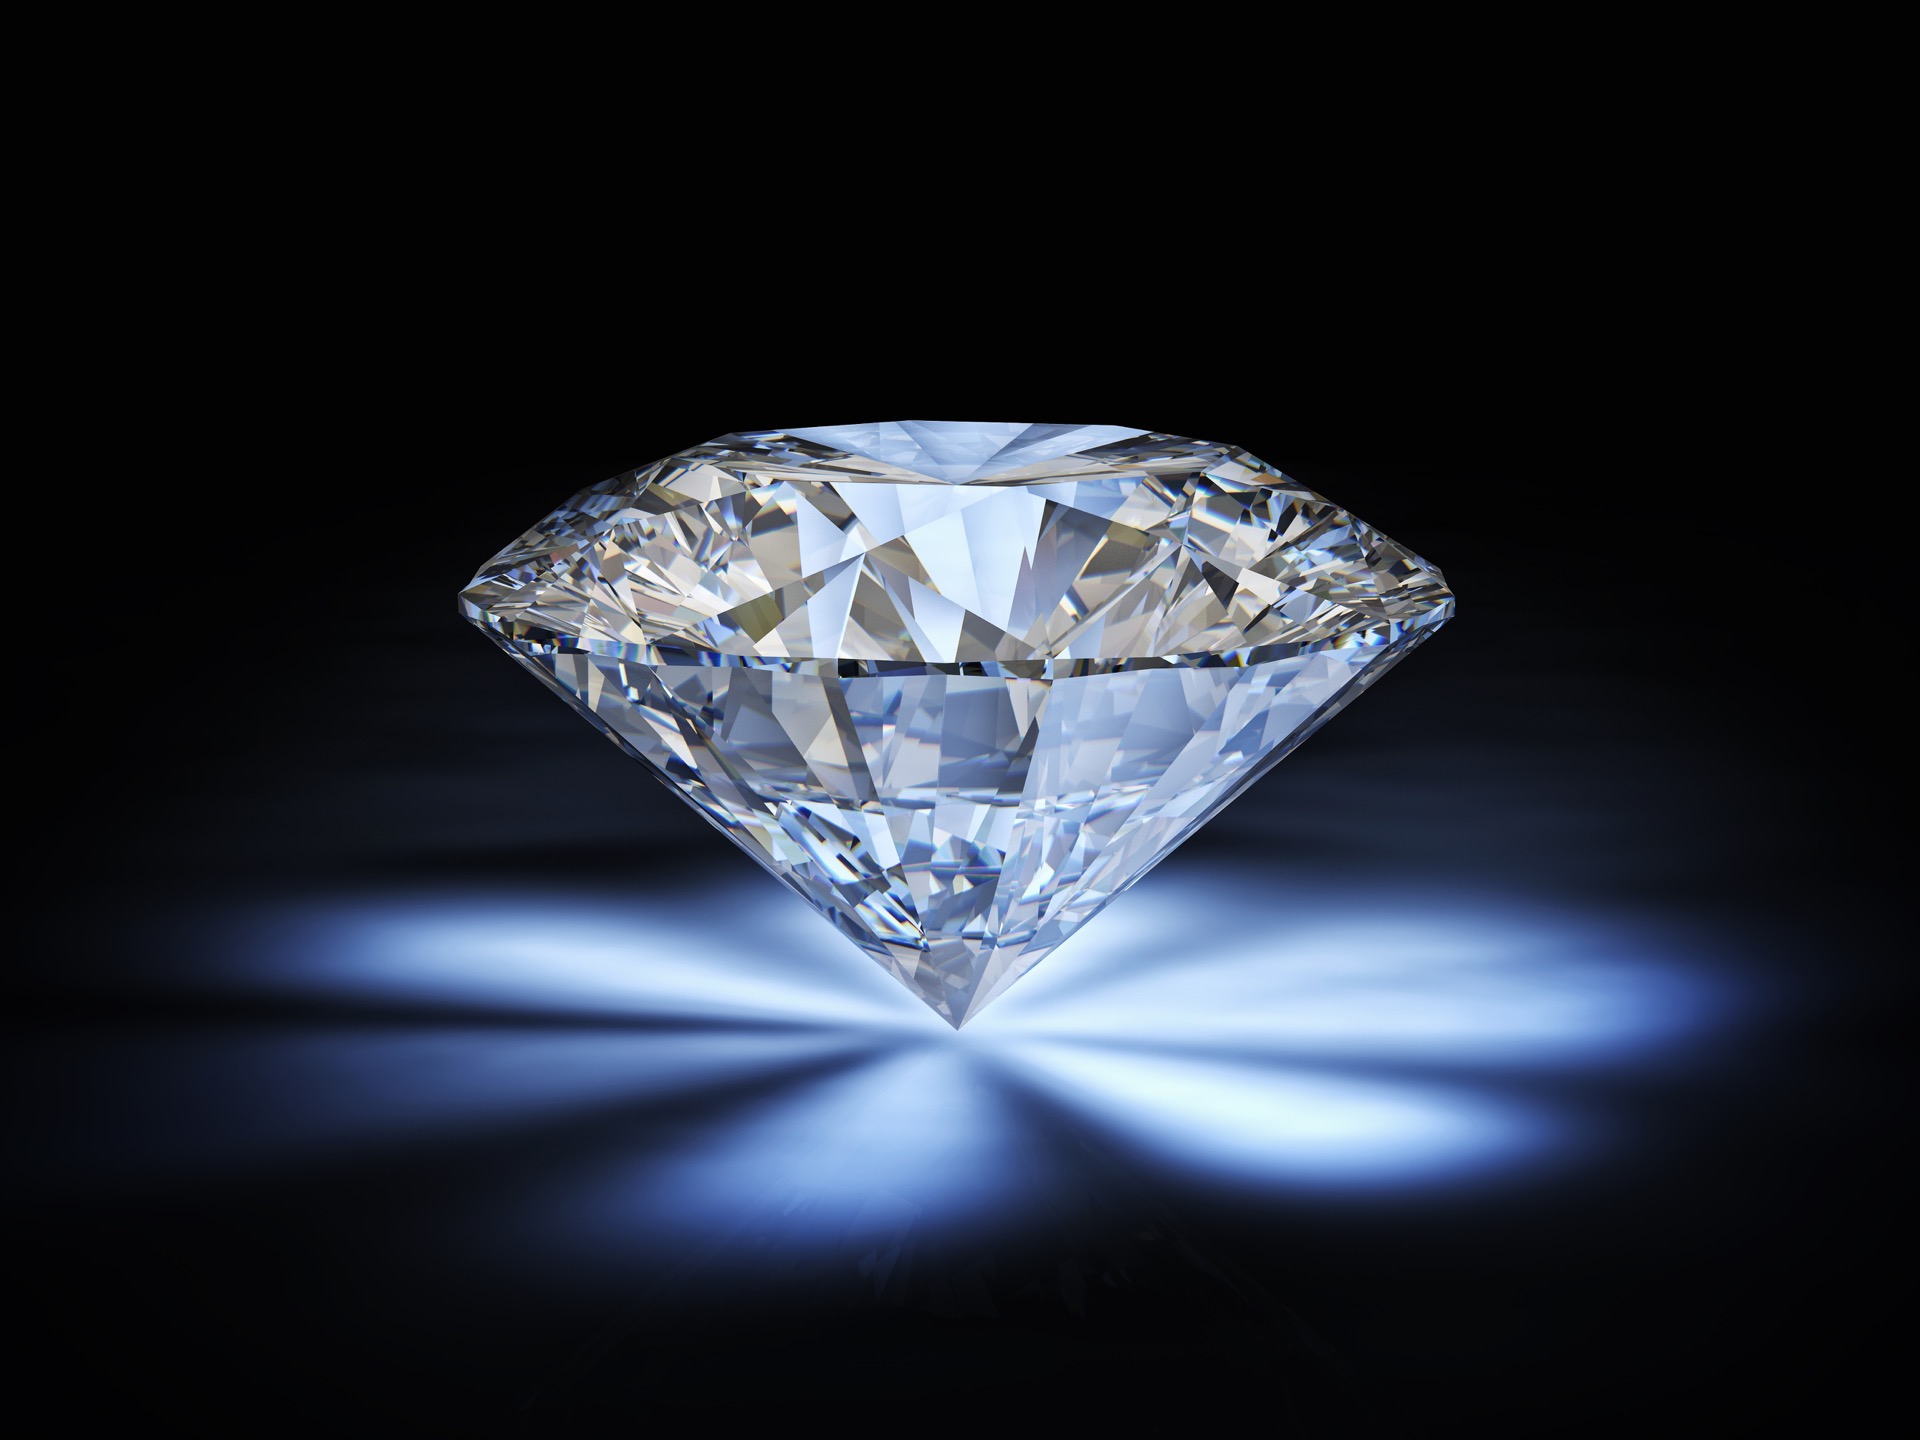 Vente aux enchères exceptionnelle d'un diamant de 100 carat payable en cryptomonnaie. © tiero, Adobe Stock